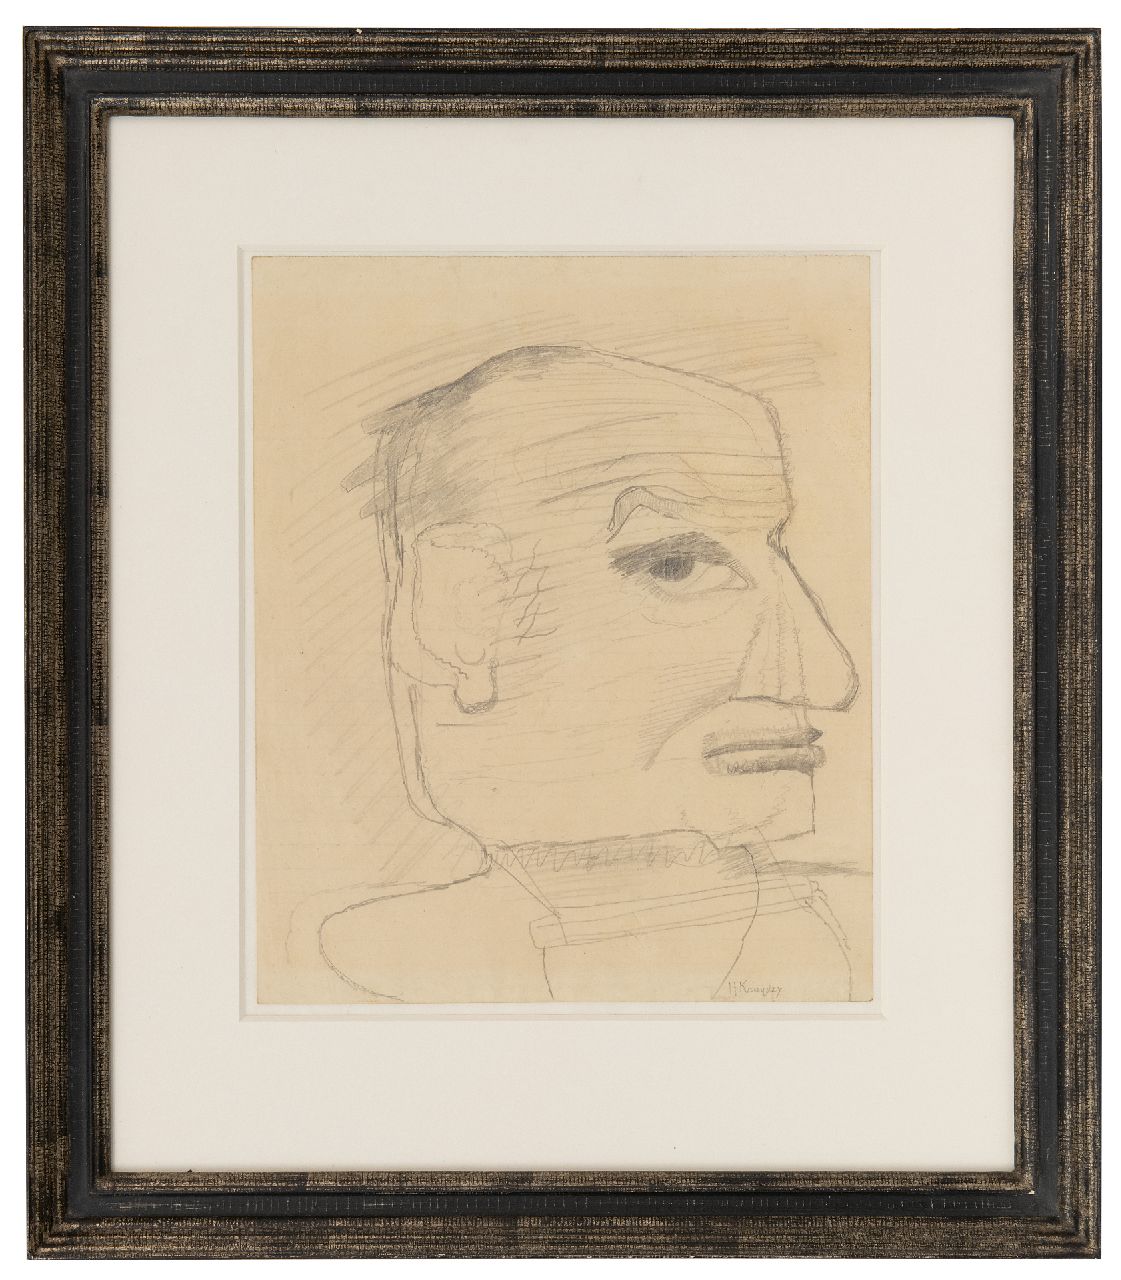 Kruyder H.J.  | 'Herman' Justus Kruyder | Aquarellen en tekeningen te koop aangeboden | Zelfportret (waarschijnlijk), potlood op papier 25,0 x 21,0 cm, gesigneerd rechtsonder